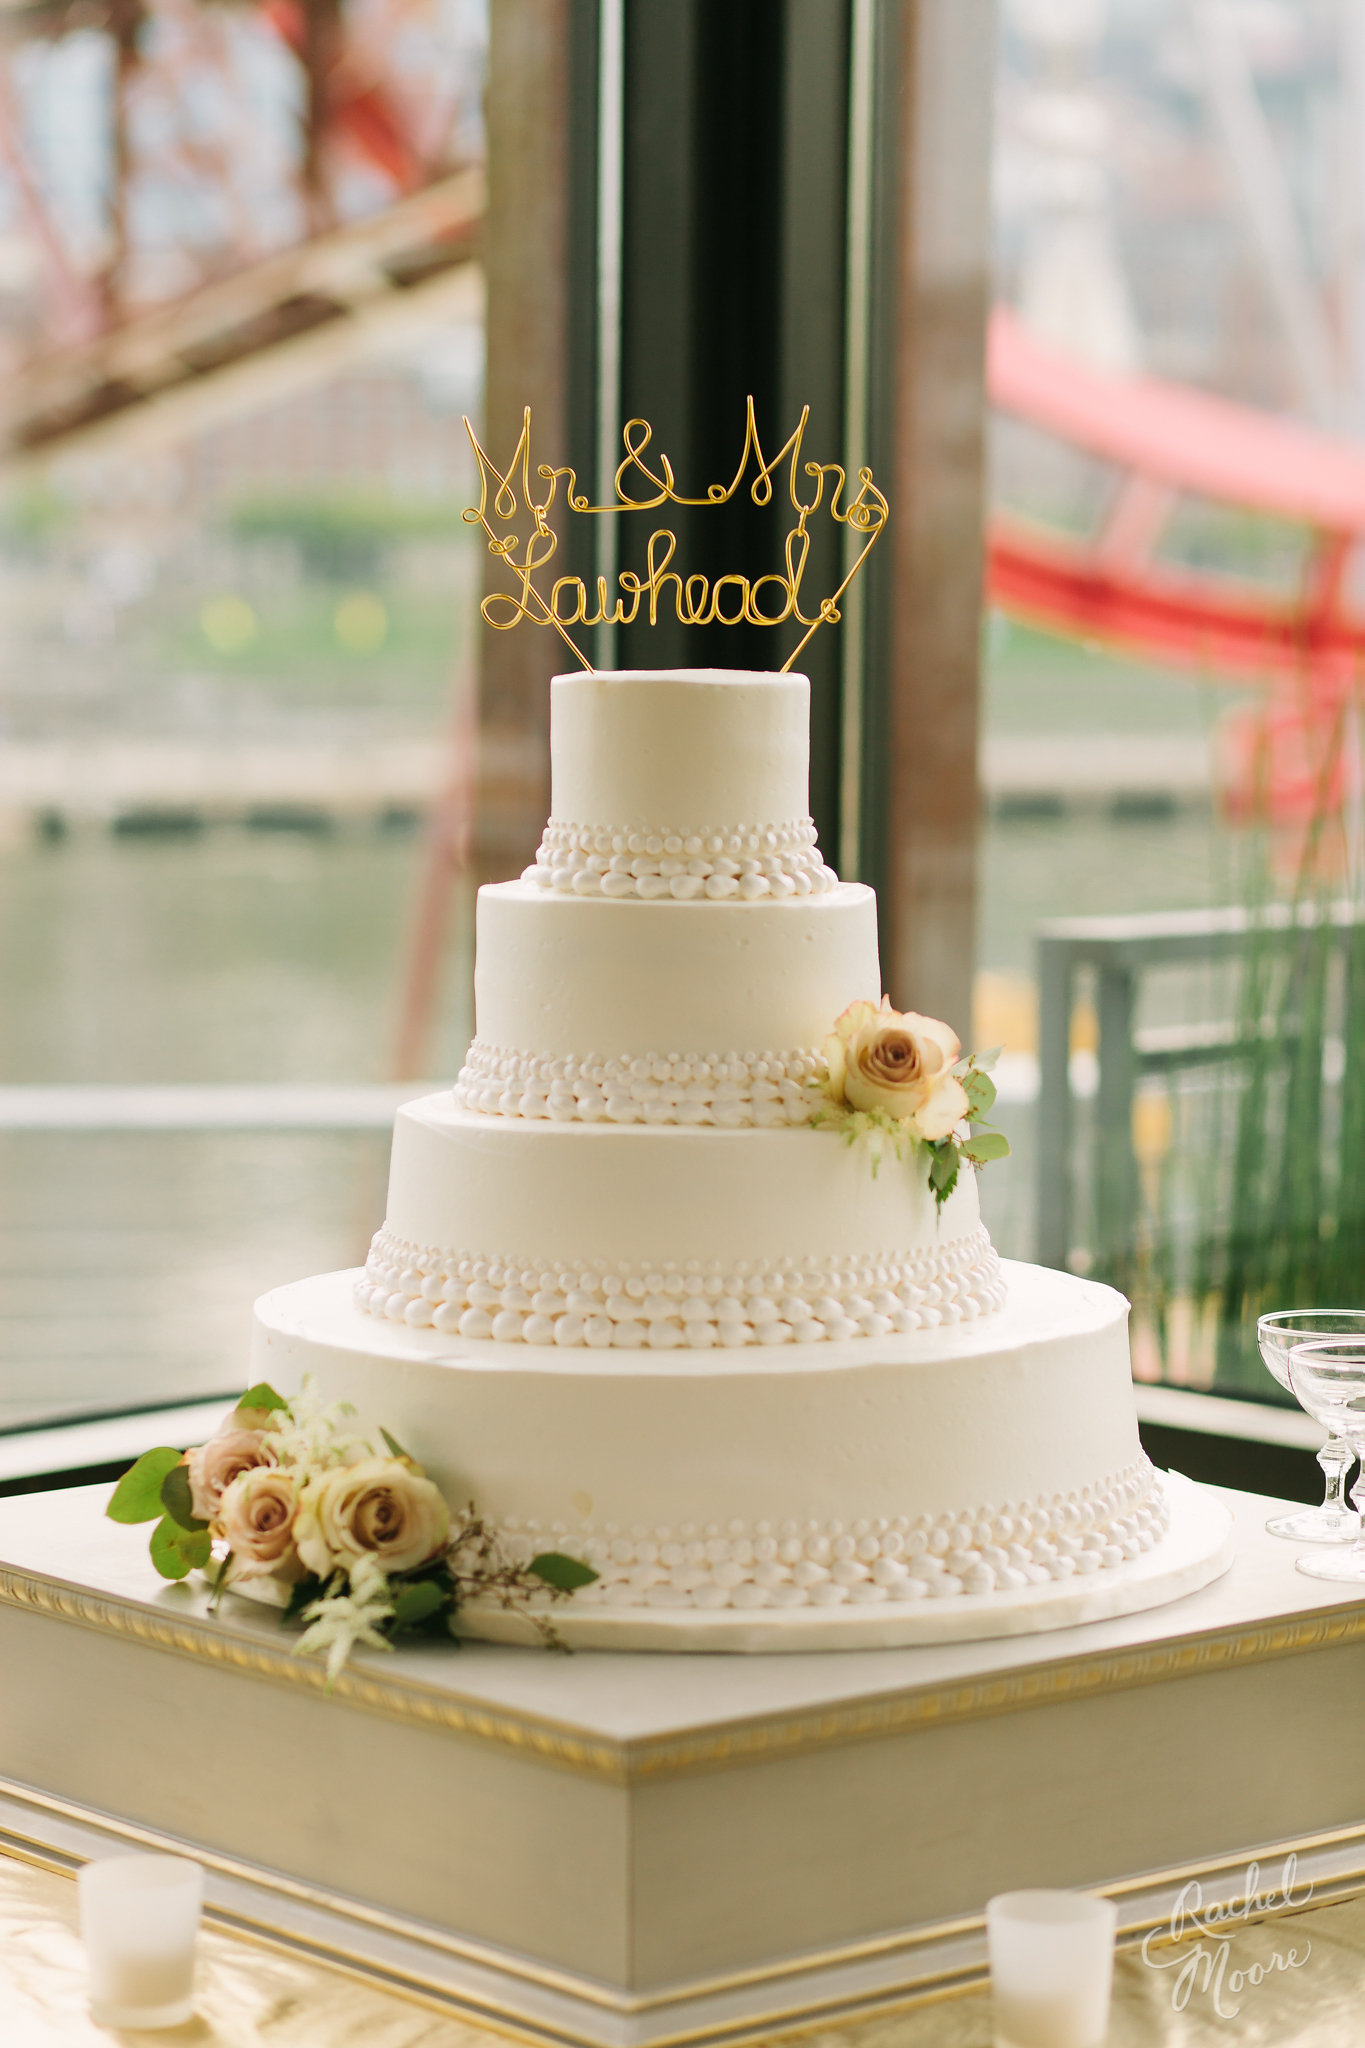 Four-tiered White Wedding Cake